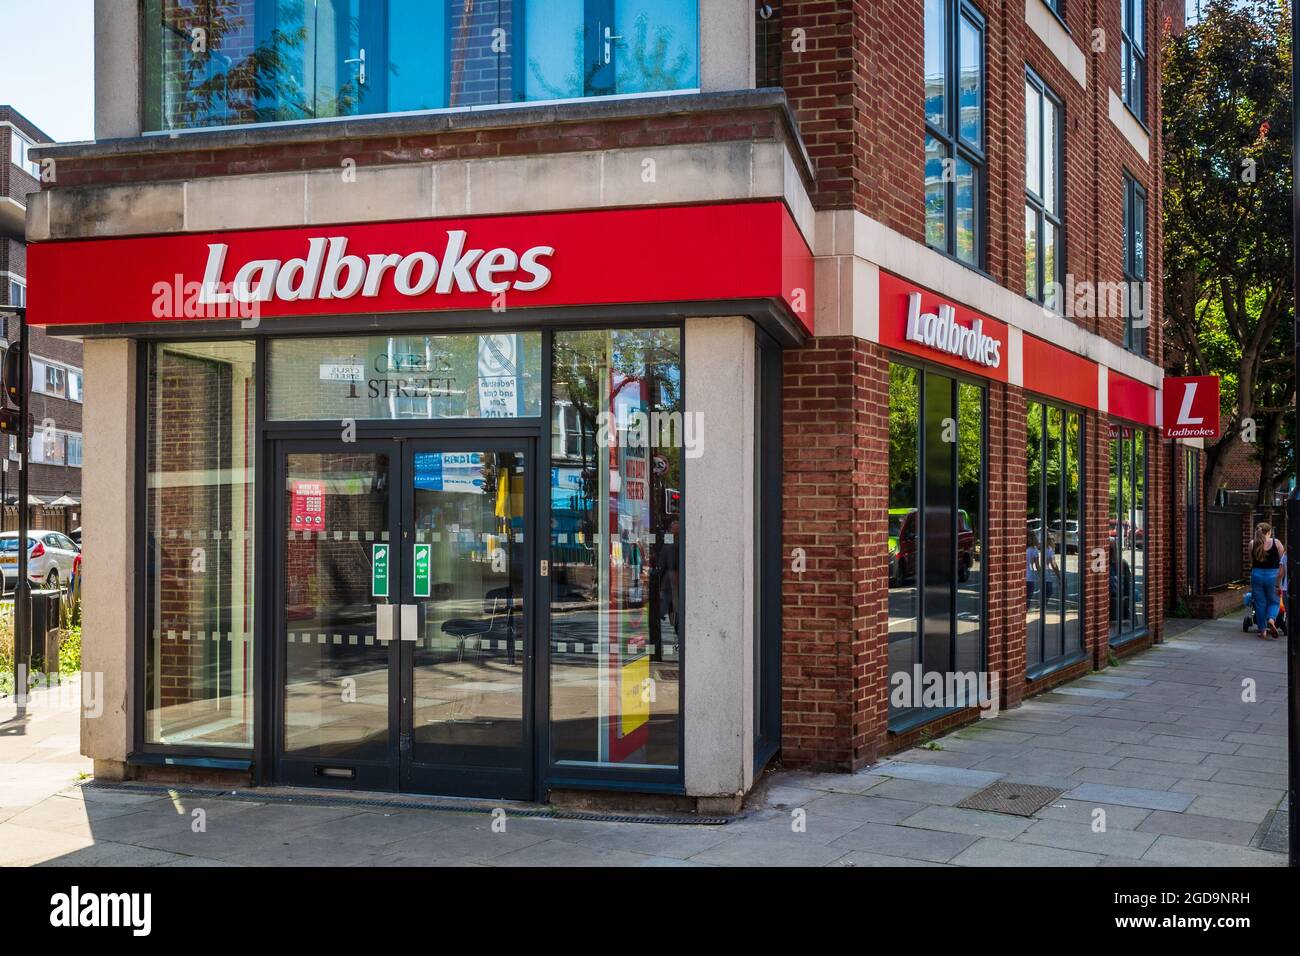 Ladbrokes Store London - Ladbrokes Coral, ein britisches Wetten- und Glücksspielunternehmen mit Sitz in London, Großbritannien, wurde 1886 gegründet. Teil der Entain SPS-Gruppe. Stockfoto